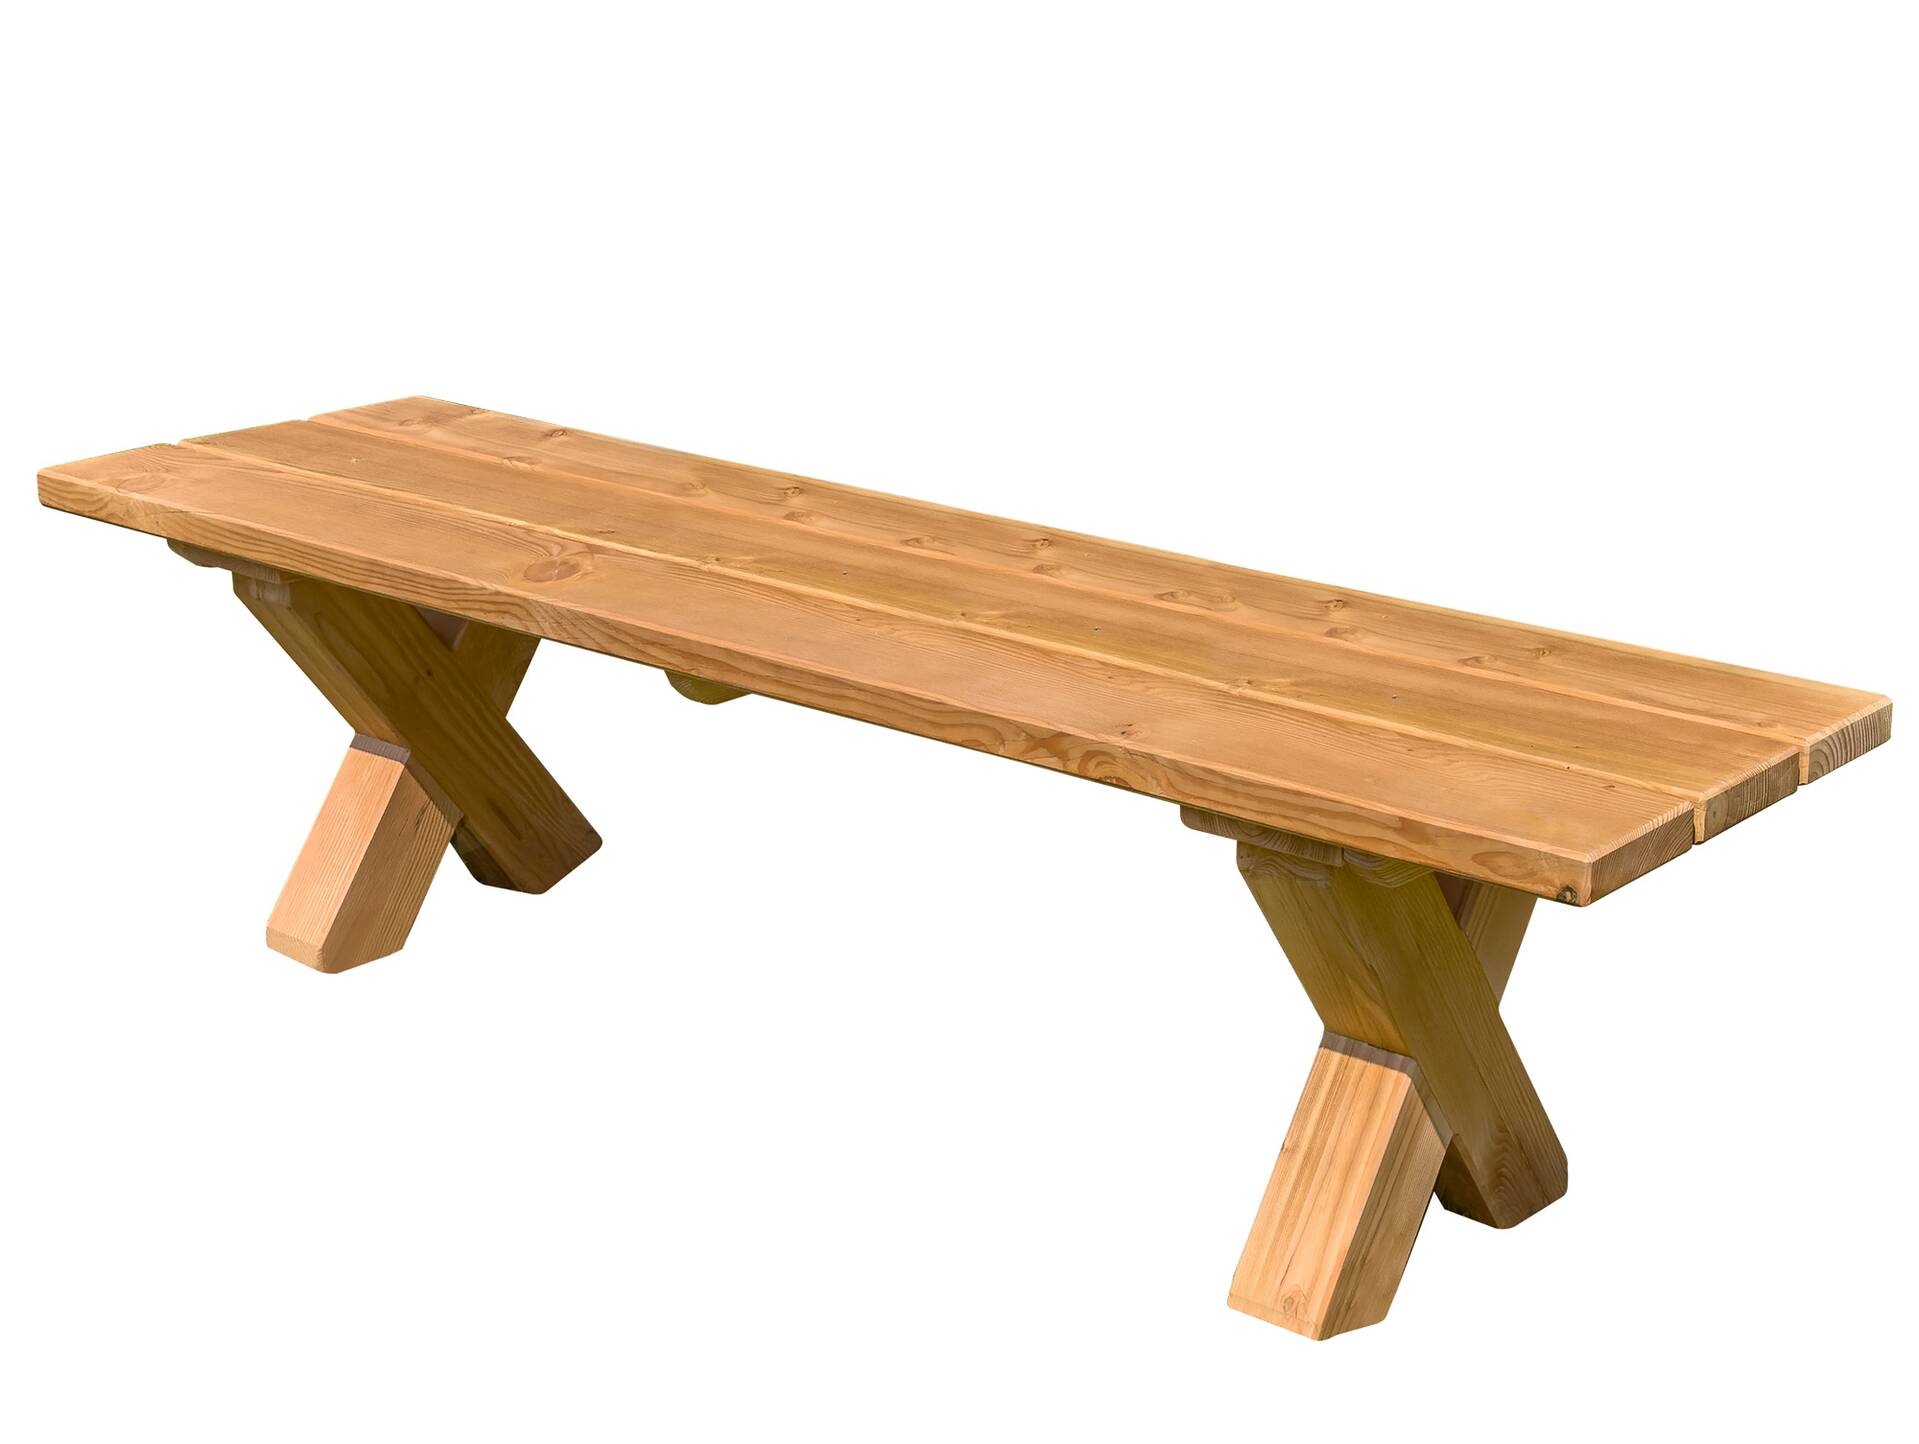 CANCUN Sitzbank / Gartenbank mit X-Beinen, Material Massivholz, Lärche natur 240 cm | ohne Rückenlehne